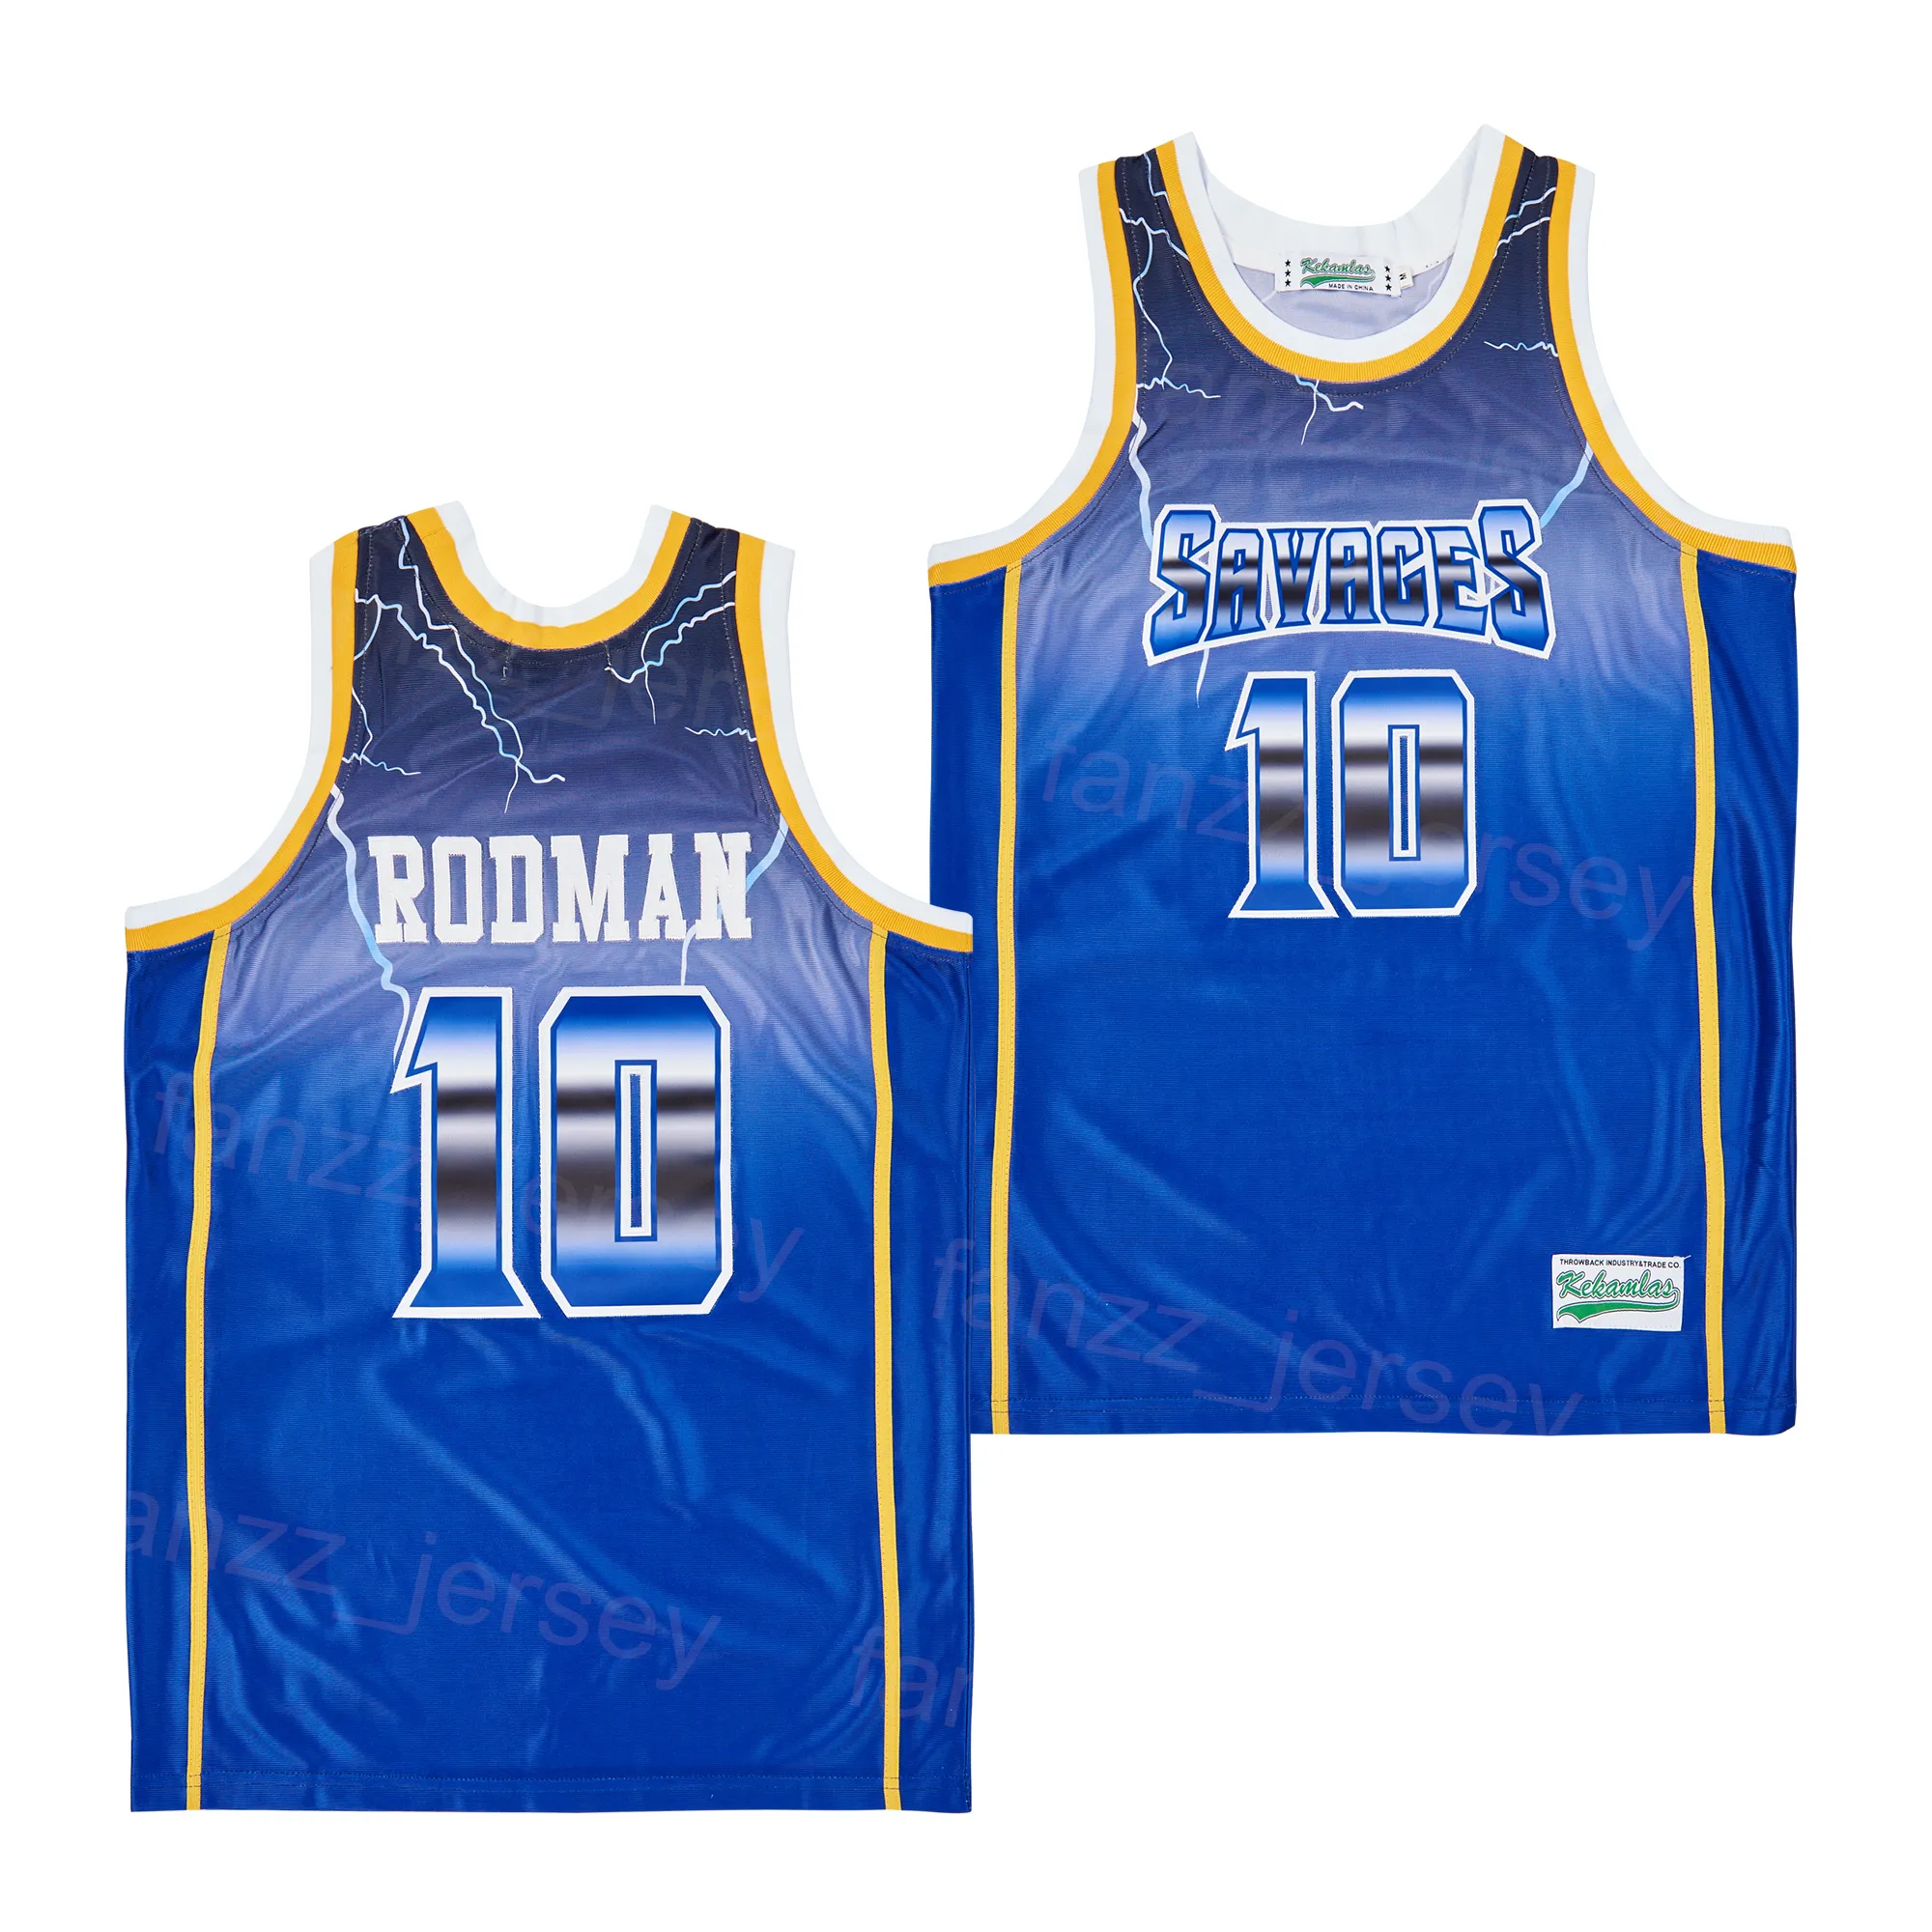 Film de basket-ball Fruytful Saynges Jersey Dennis Rodman 10 de David Film Hiphop High School Embroidery University for Sport Fans Vintage Team Blue Shirt